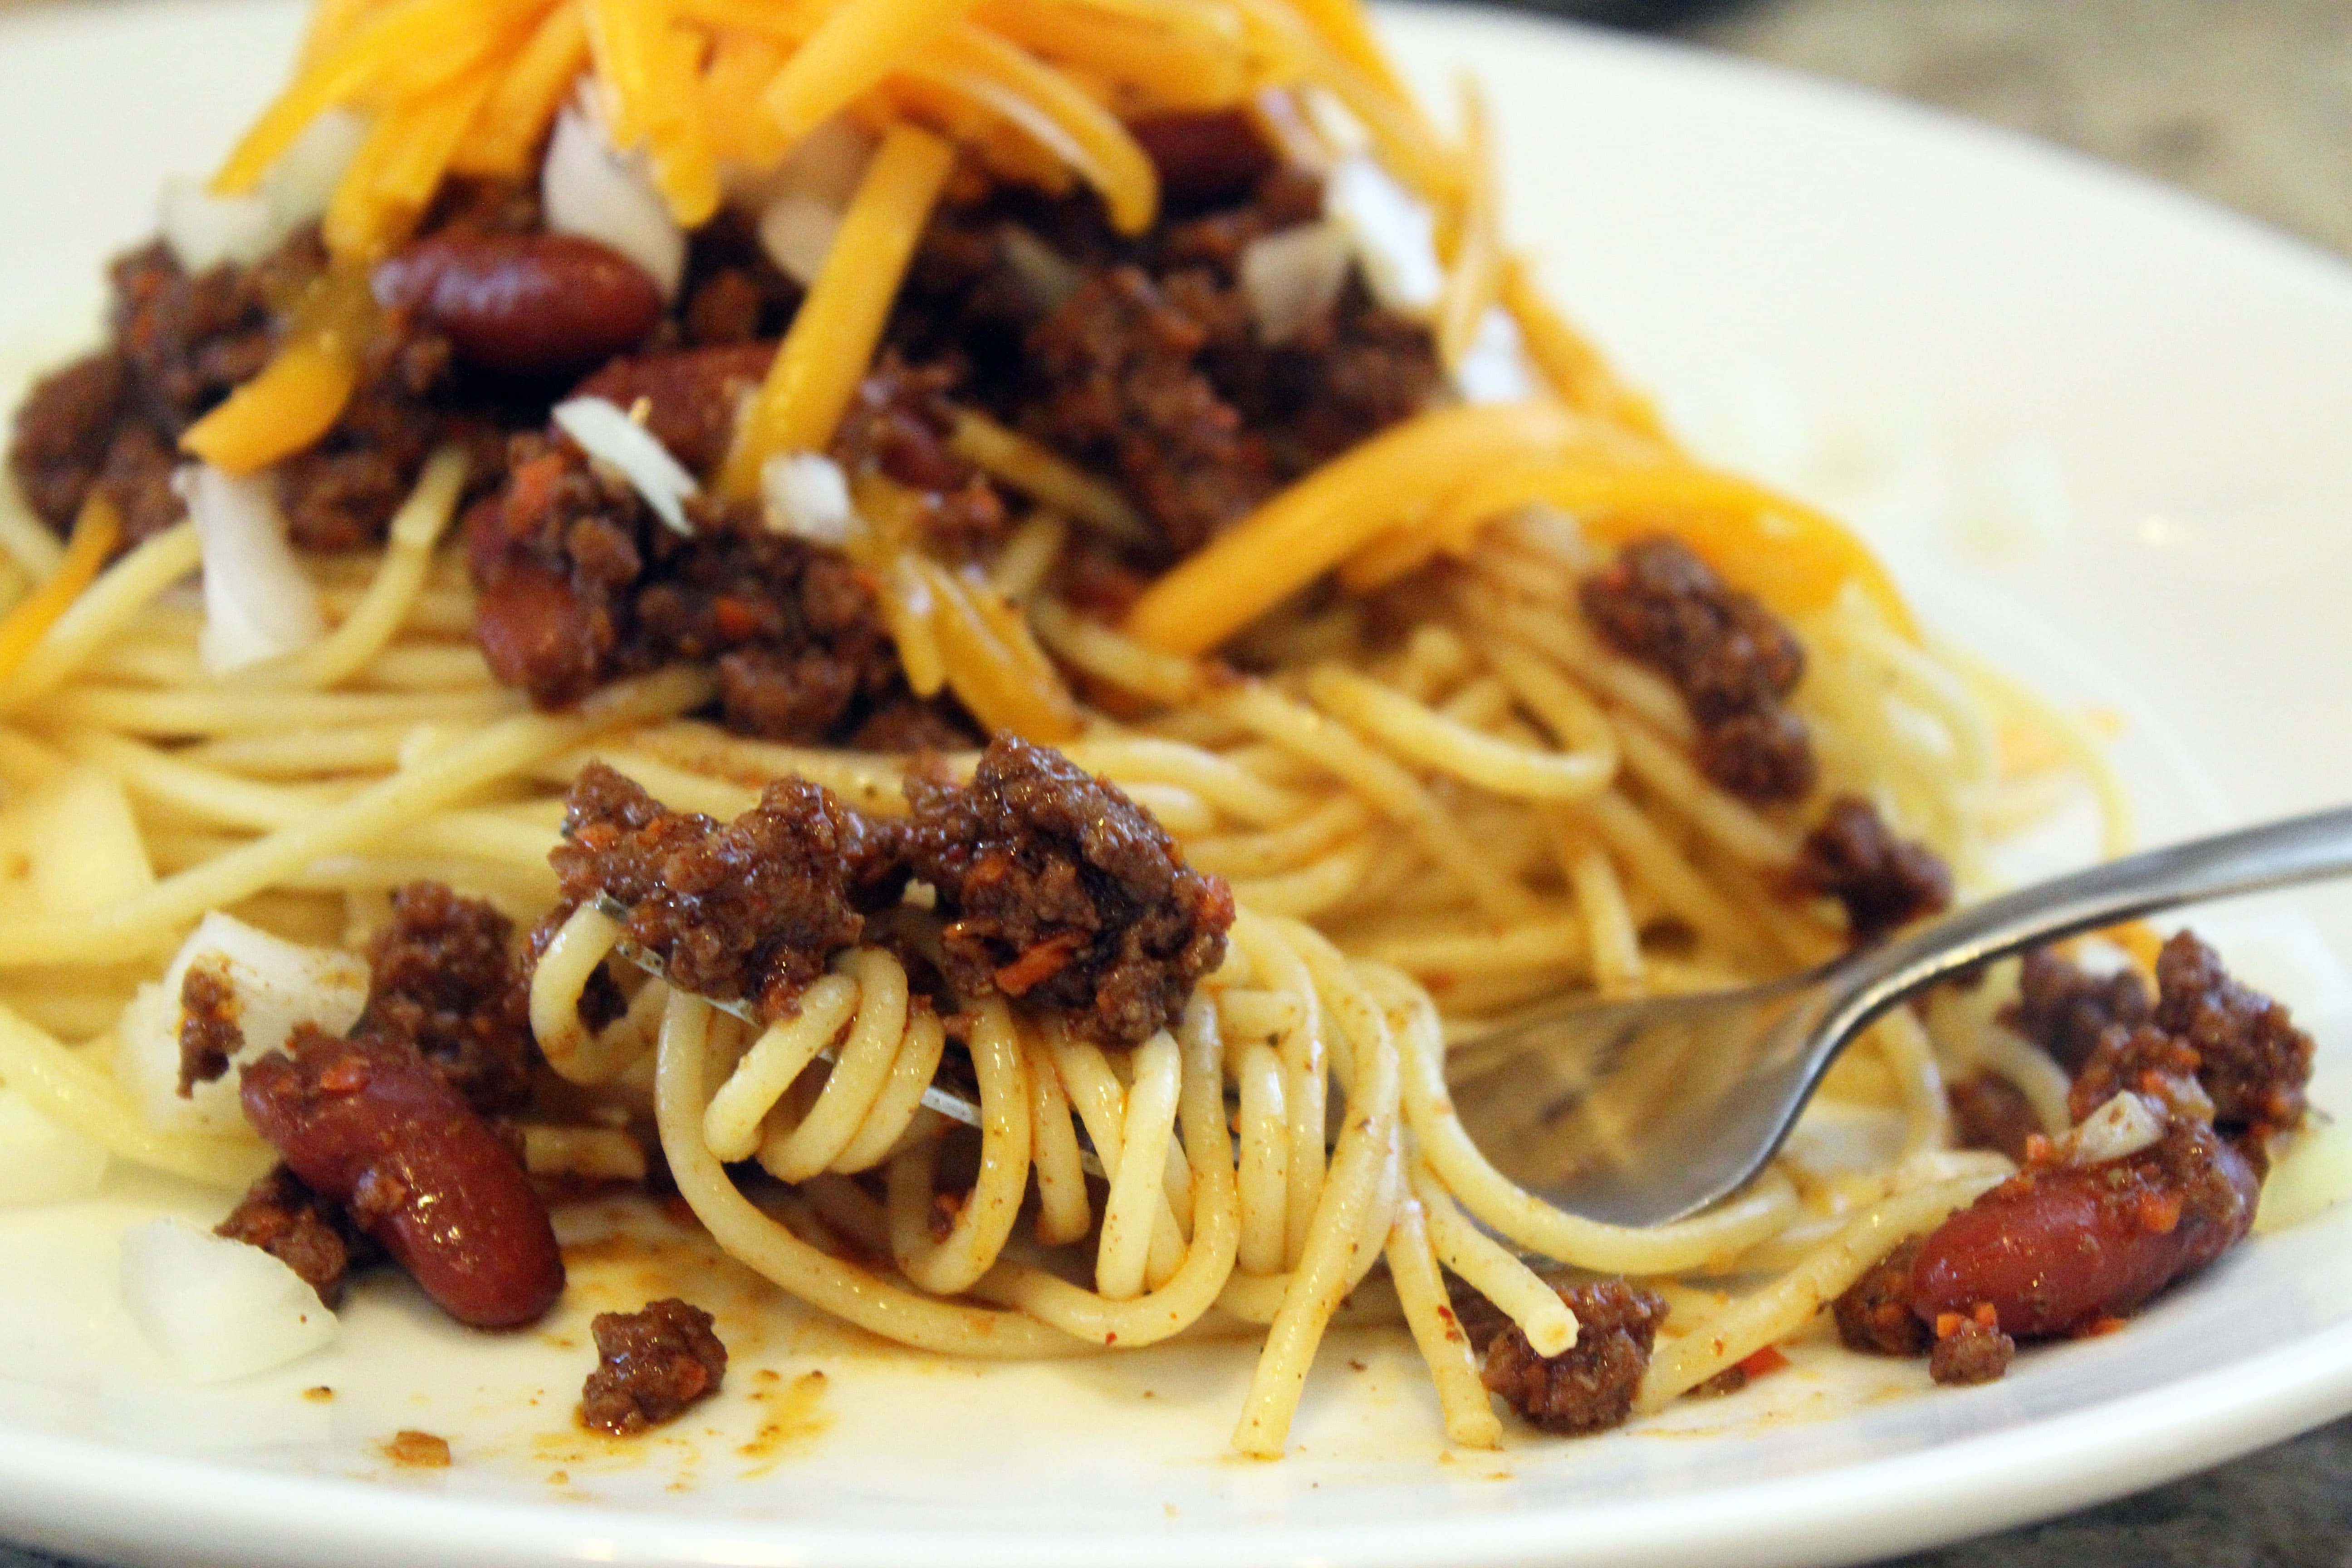 Twirly Spaghetti with Chili